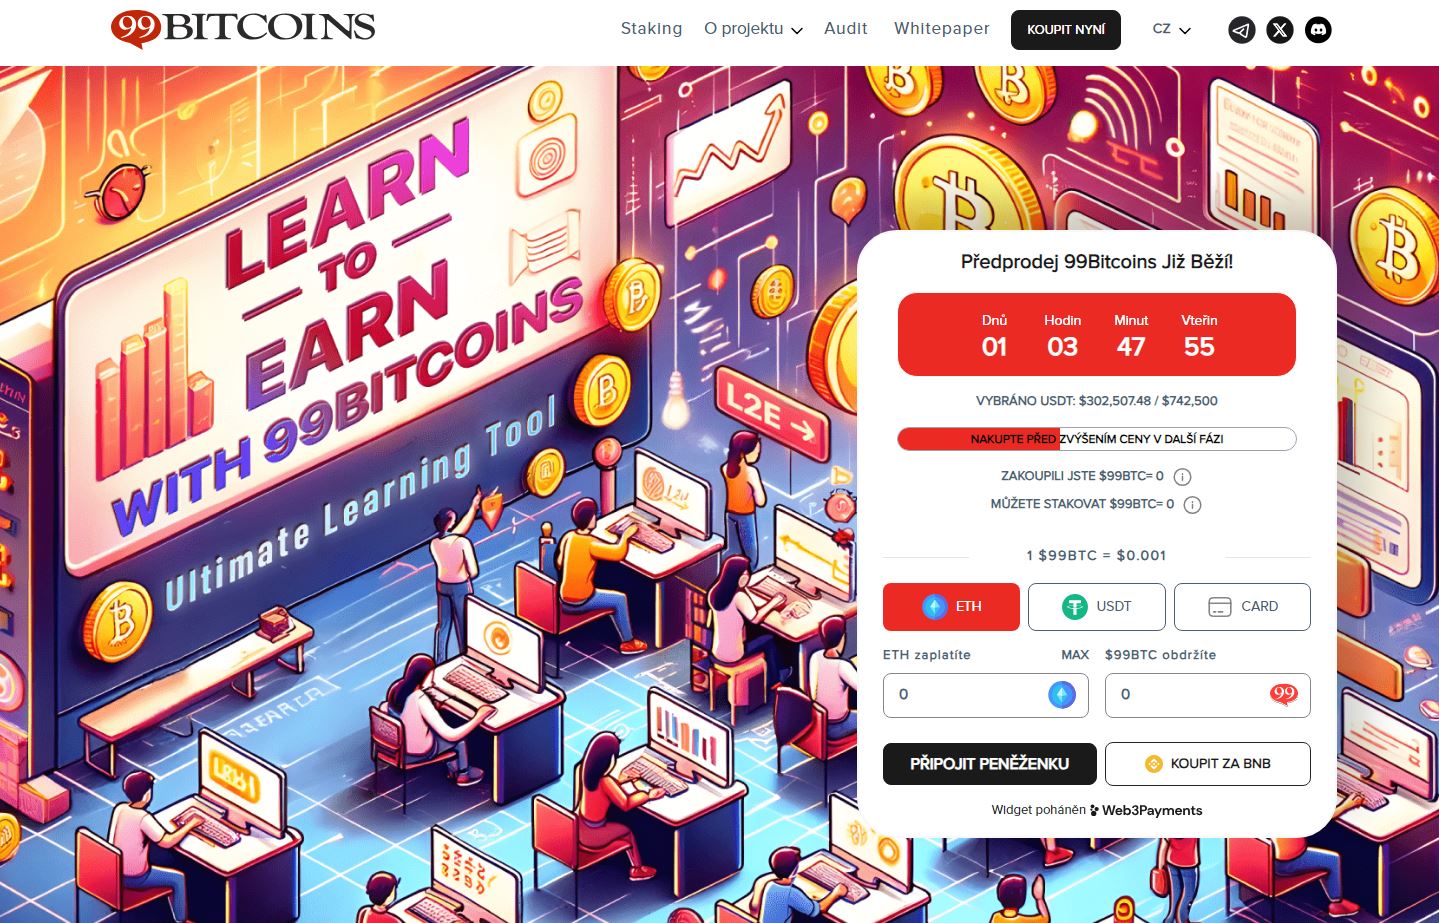 99Bitcoins patří mezi nové kryptoměny s potenciálem, kde vyděláváte skrze sebevzdělávání